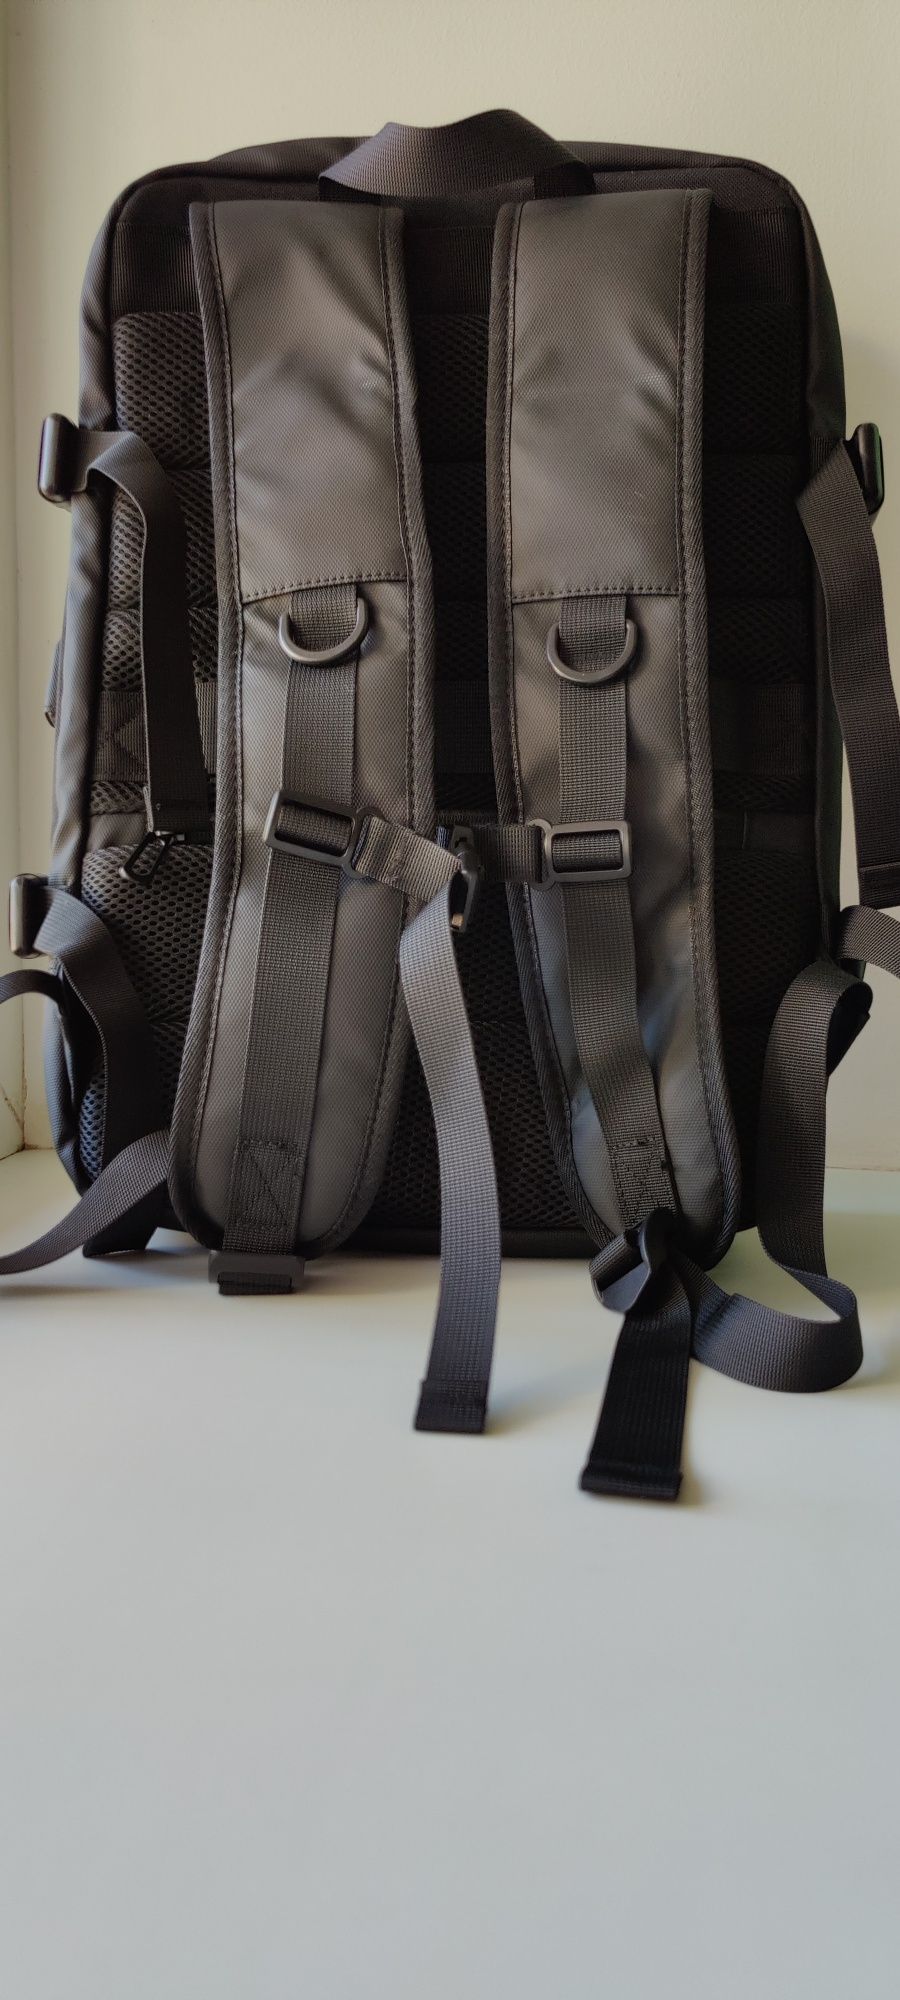 Рюкзак-сумка для міста - подорожей